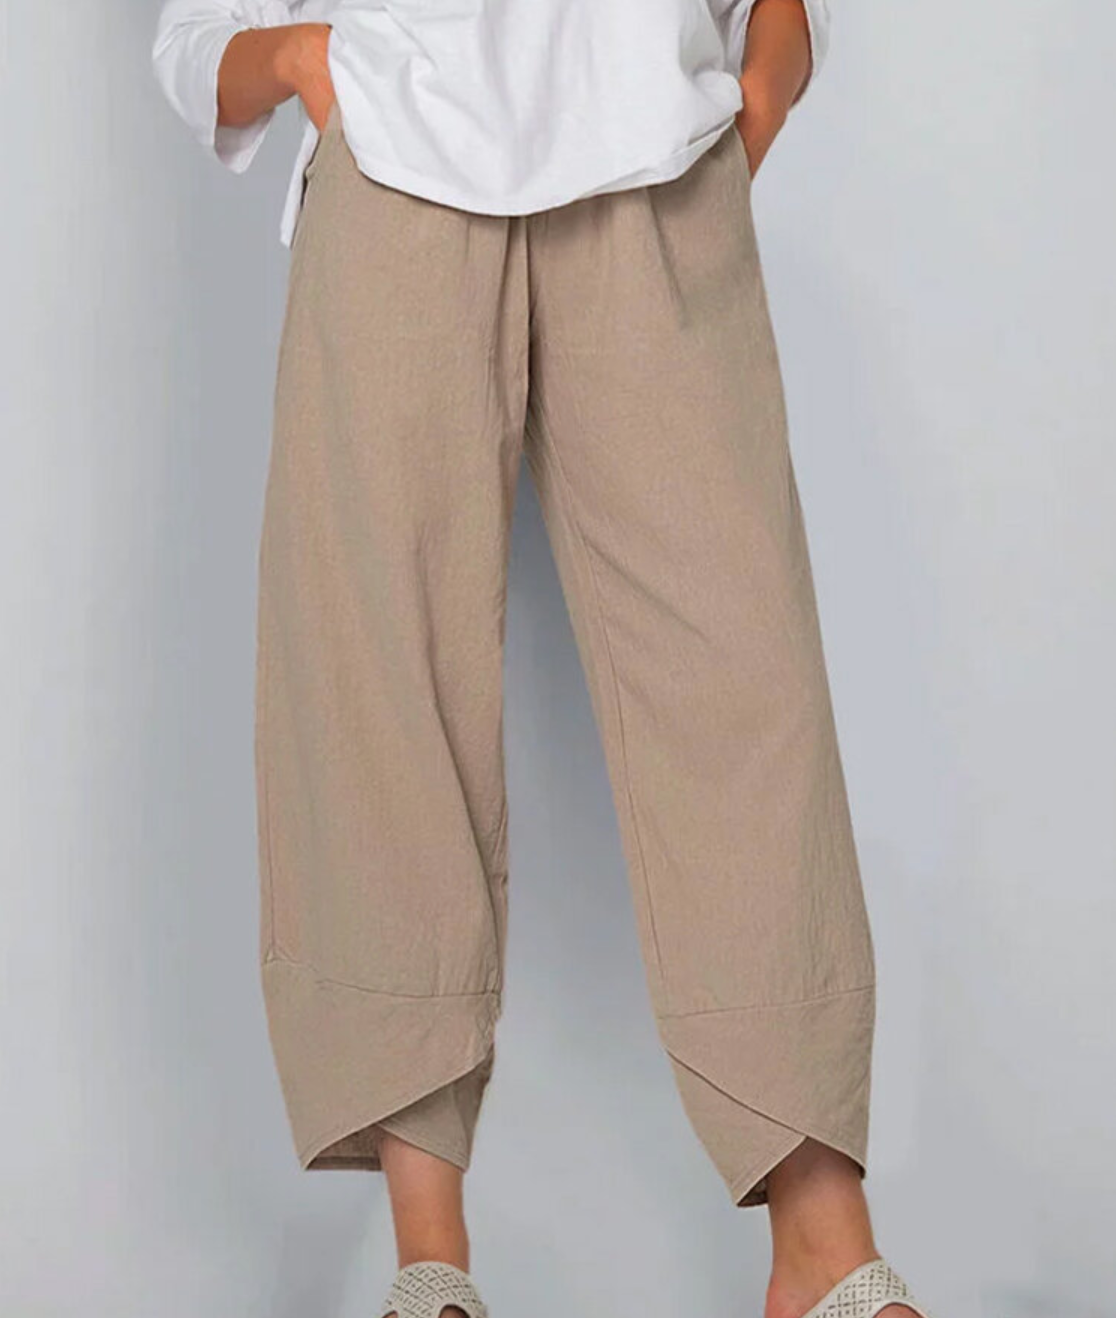 FIANA - Le pantalon stylé et unique